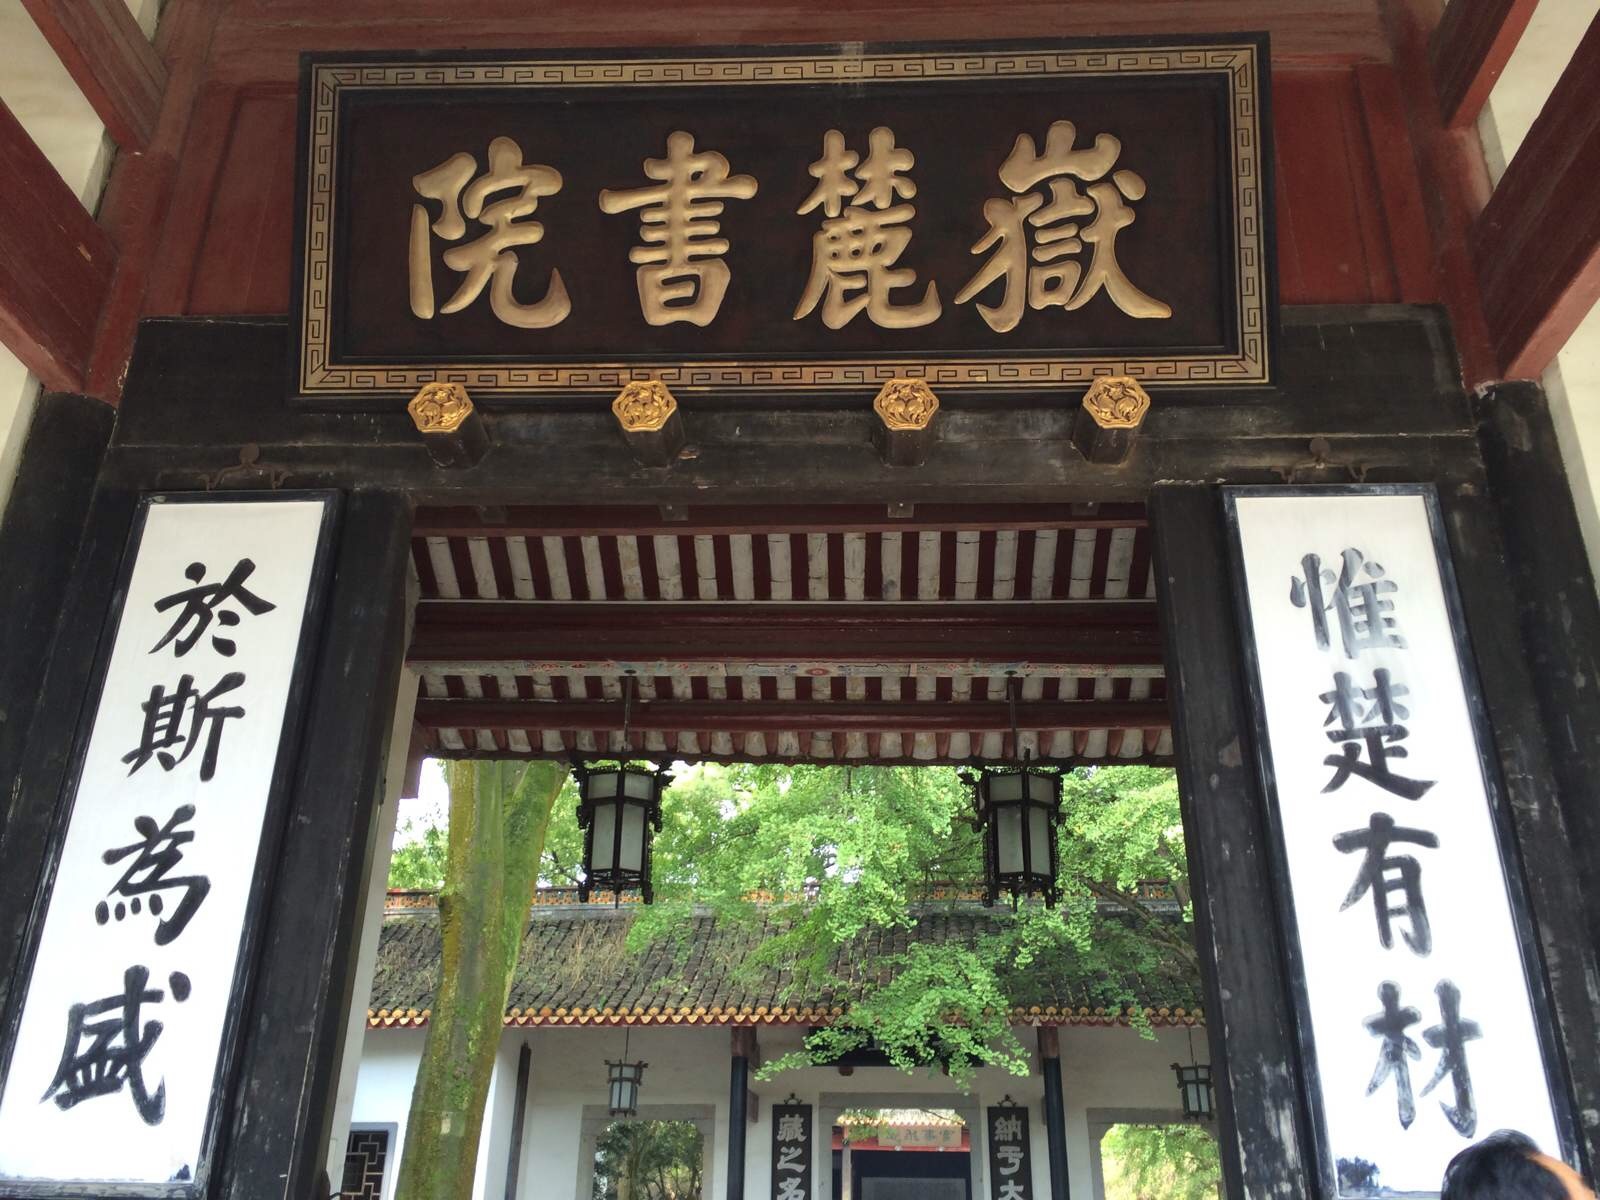 Yuelu Academy